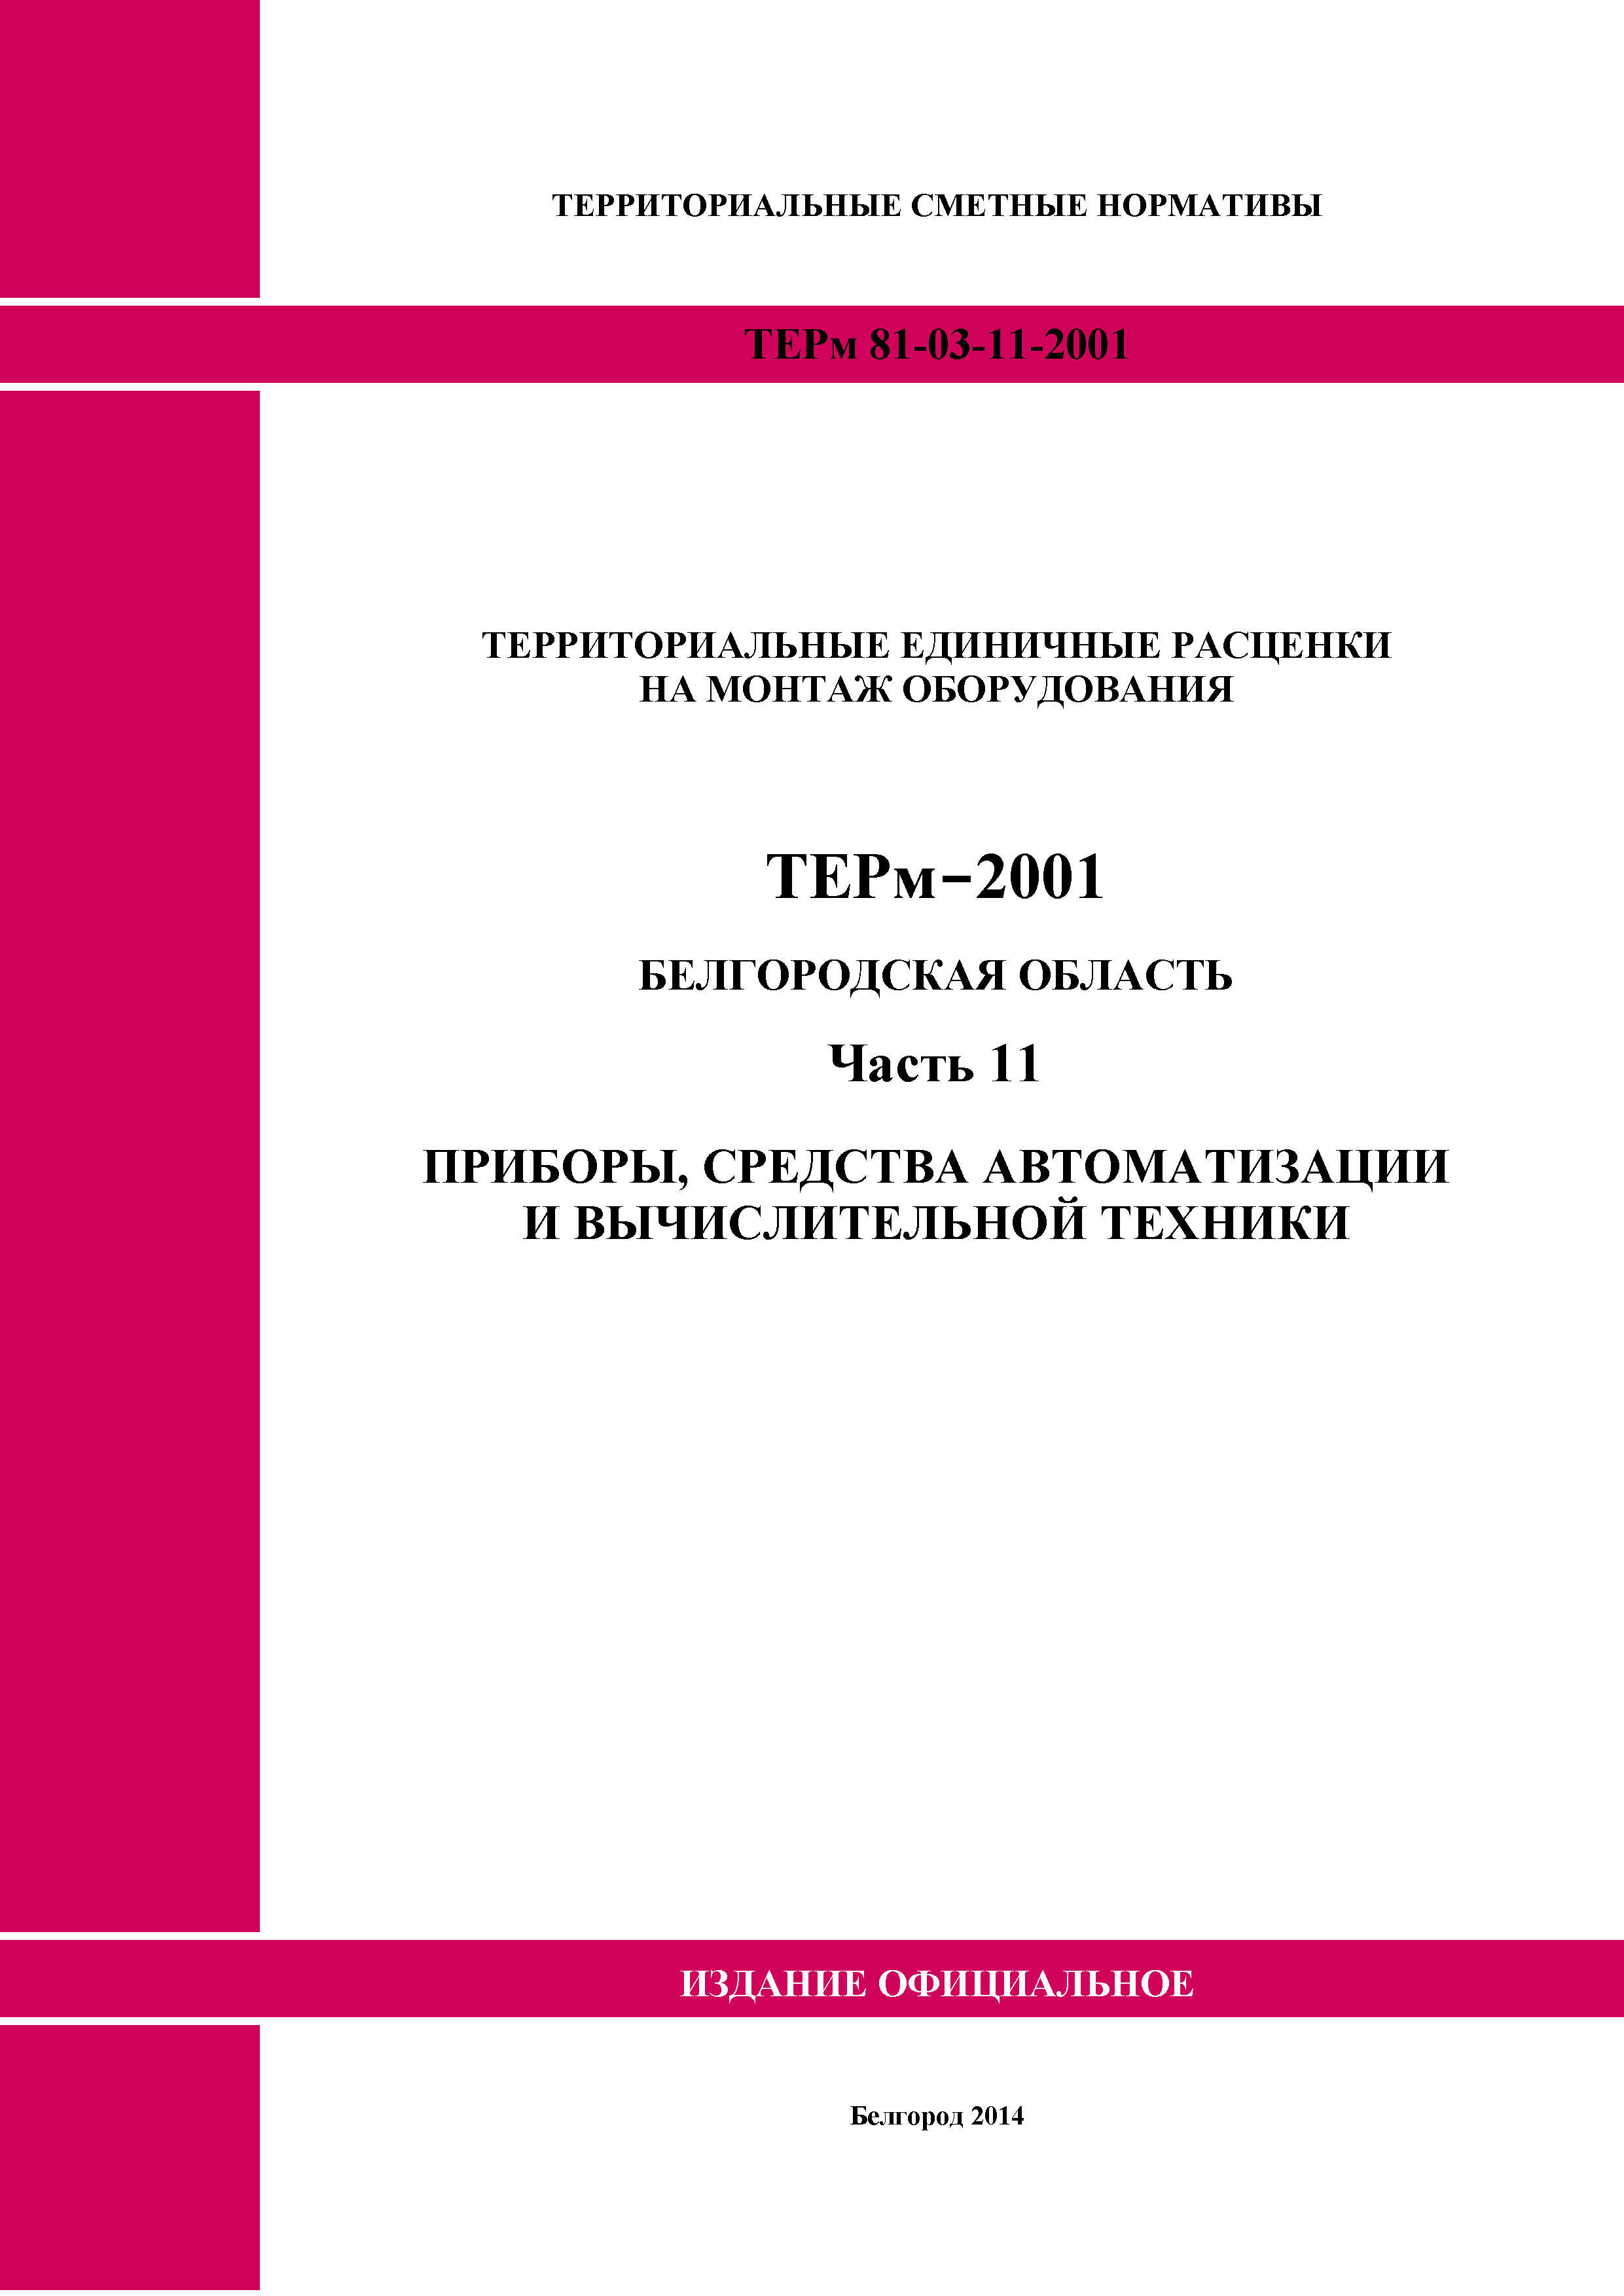 ТЕРм Белгородская область 81-03-11-2001